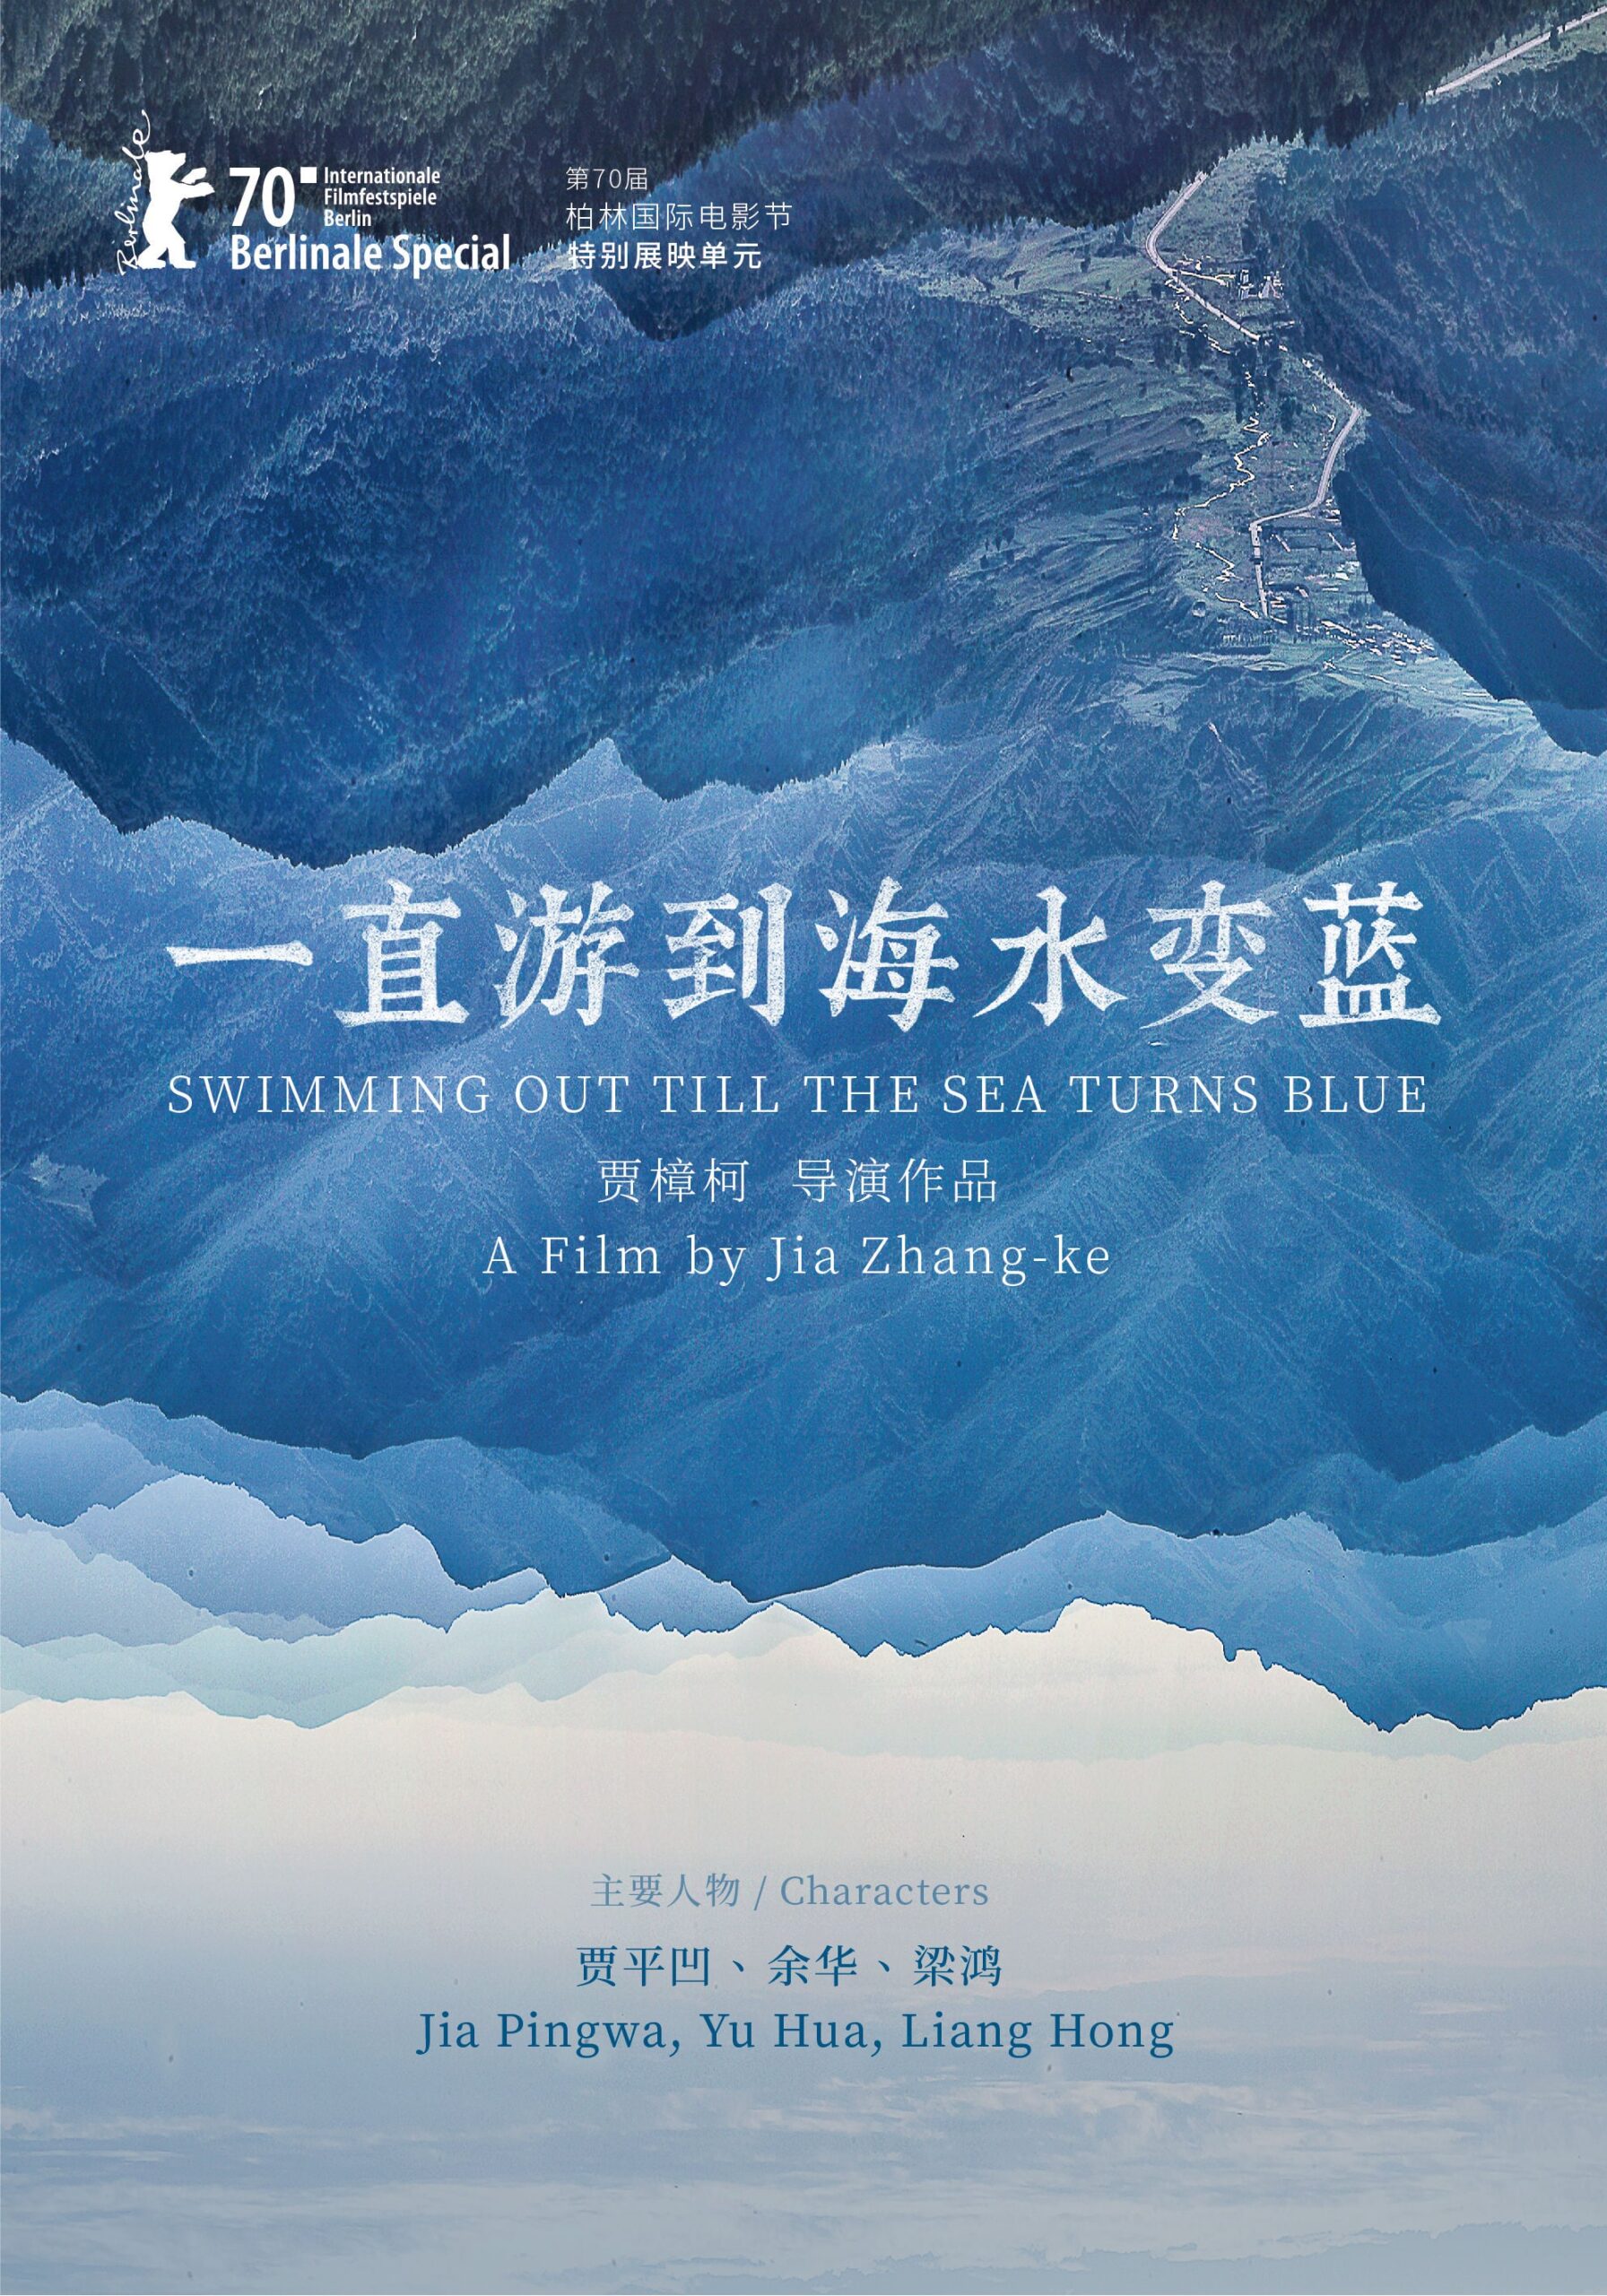 Nadando Até o Mar Ficar Azul Jia Zhangke Filme Crítica Mostra SP Pôster